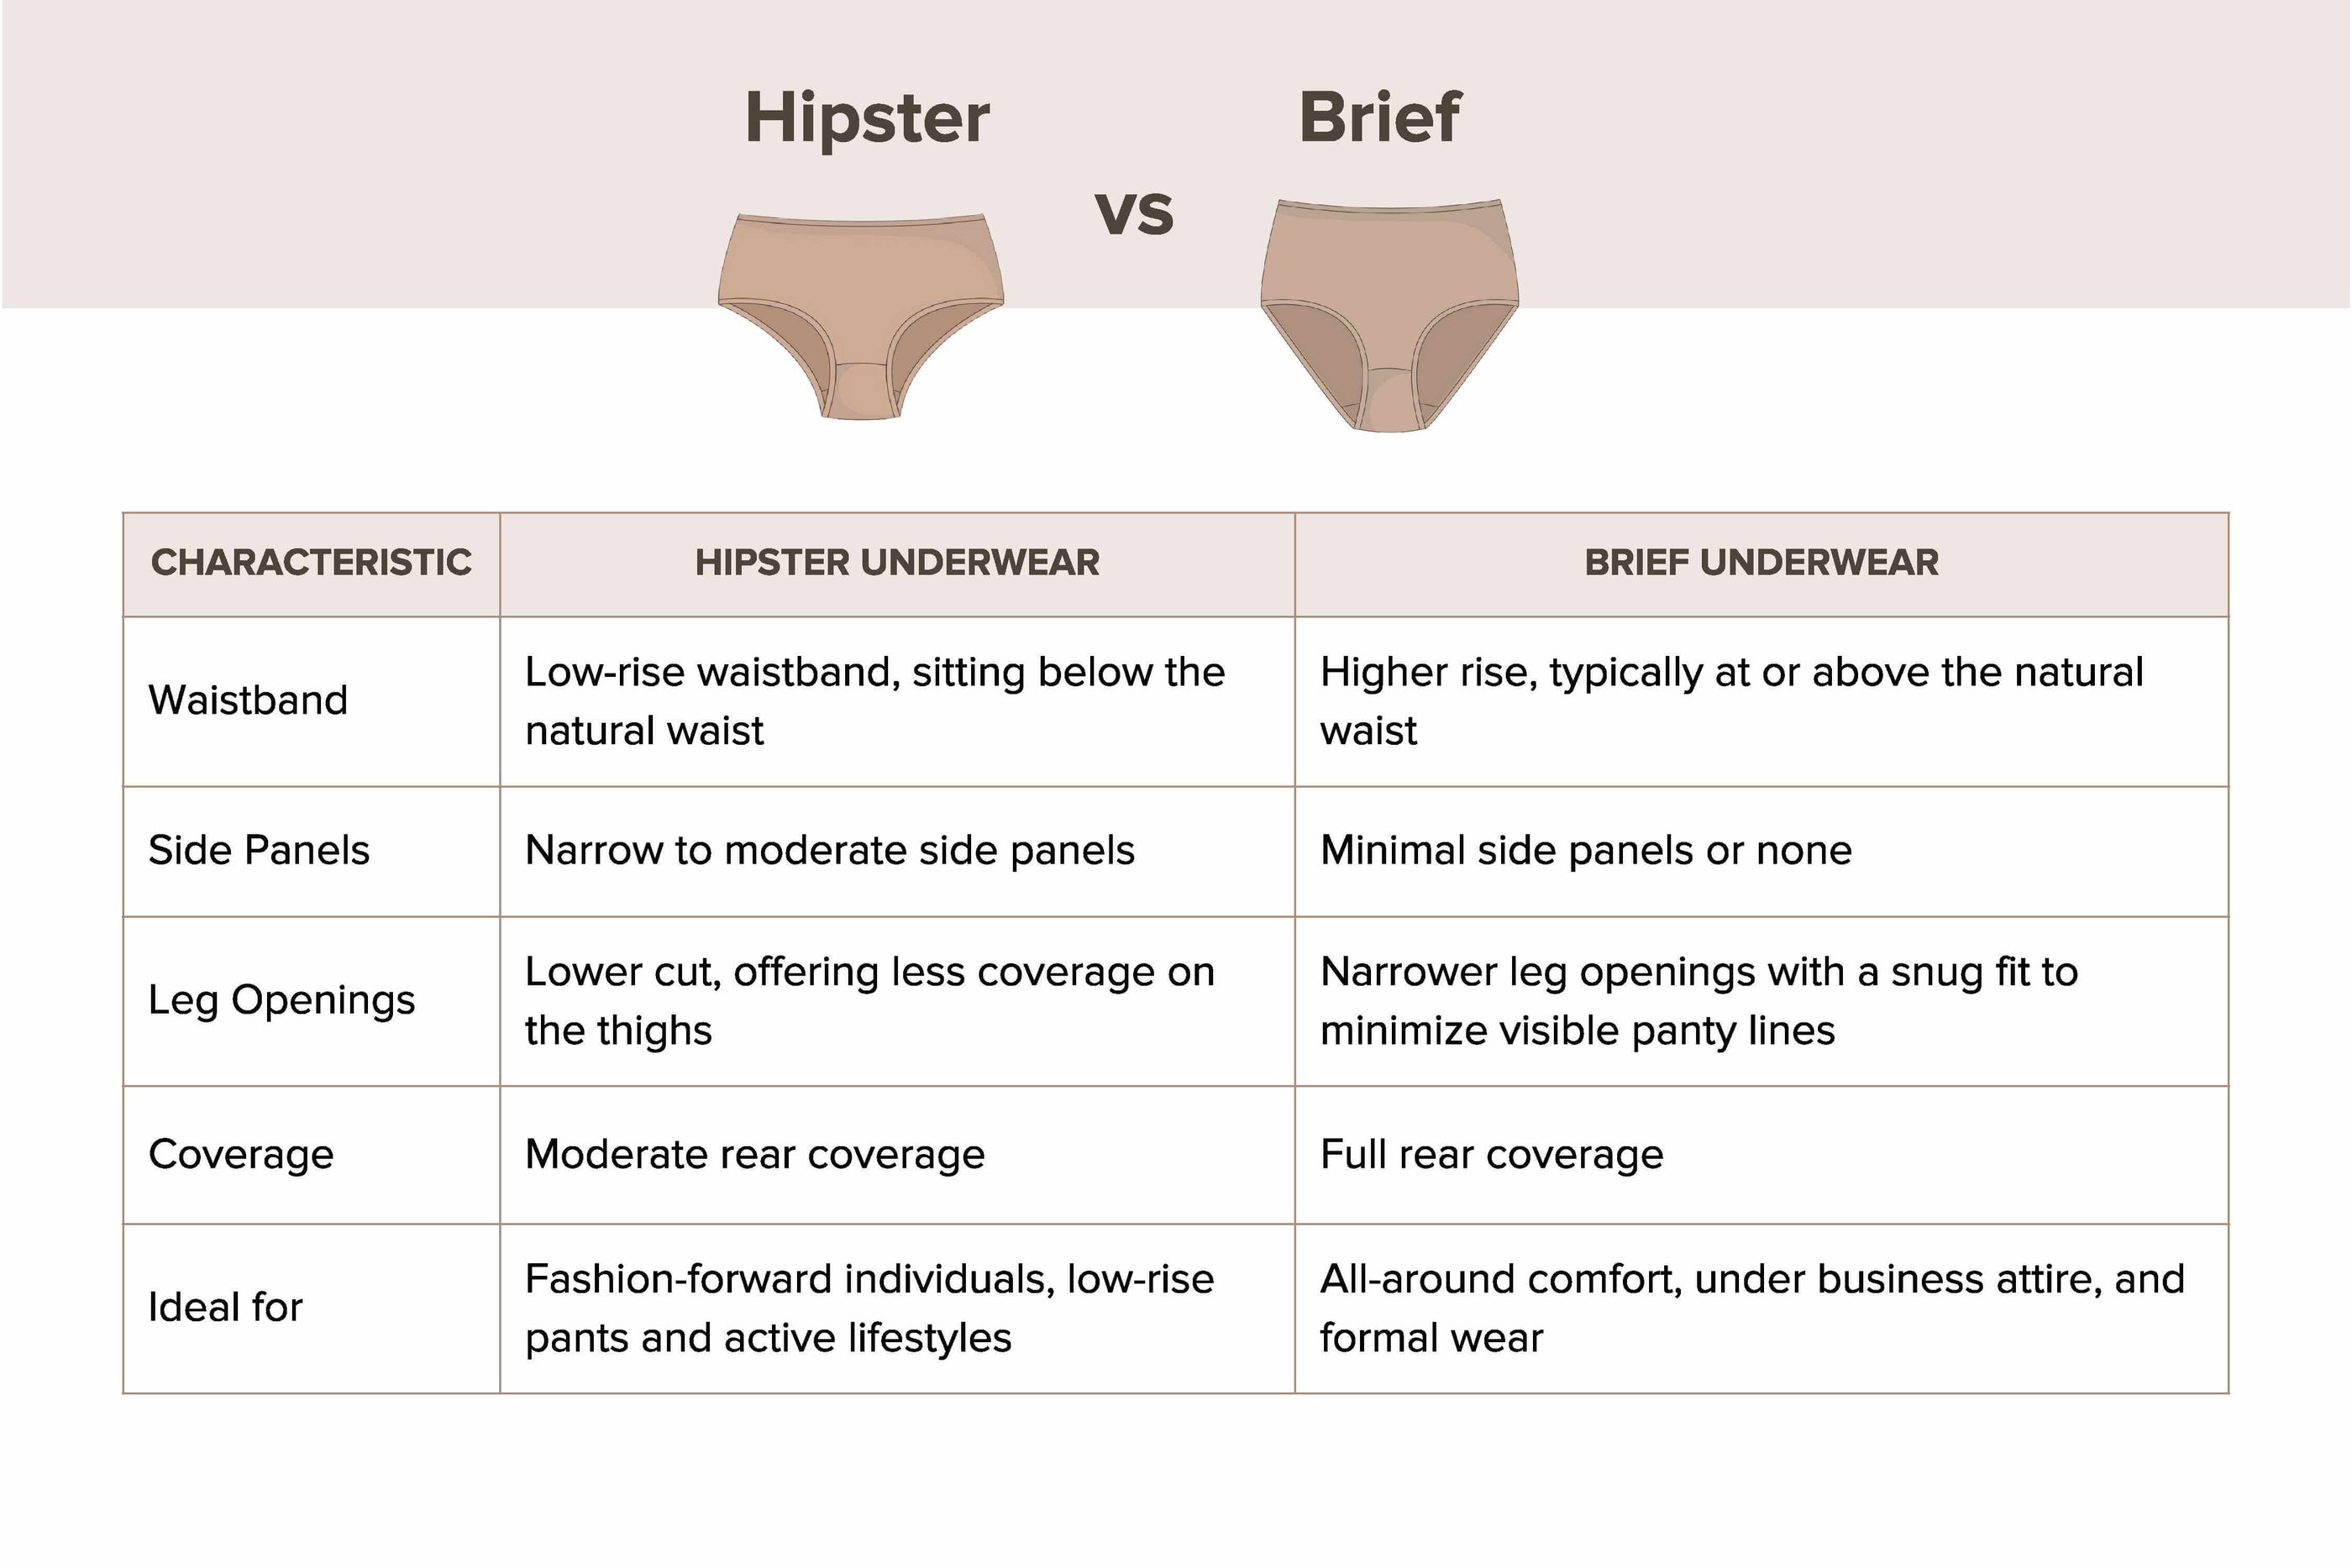 Hipster Brief Underwear, Underwear